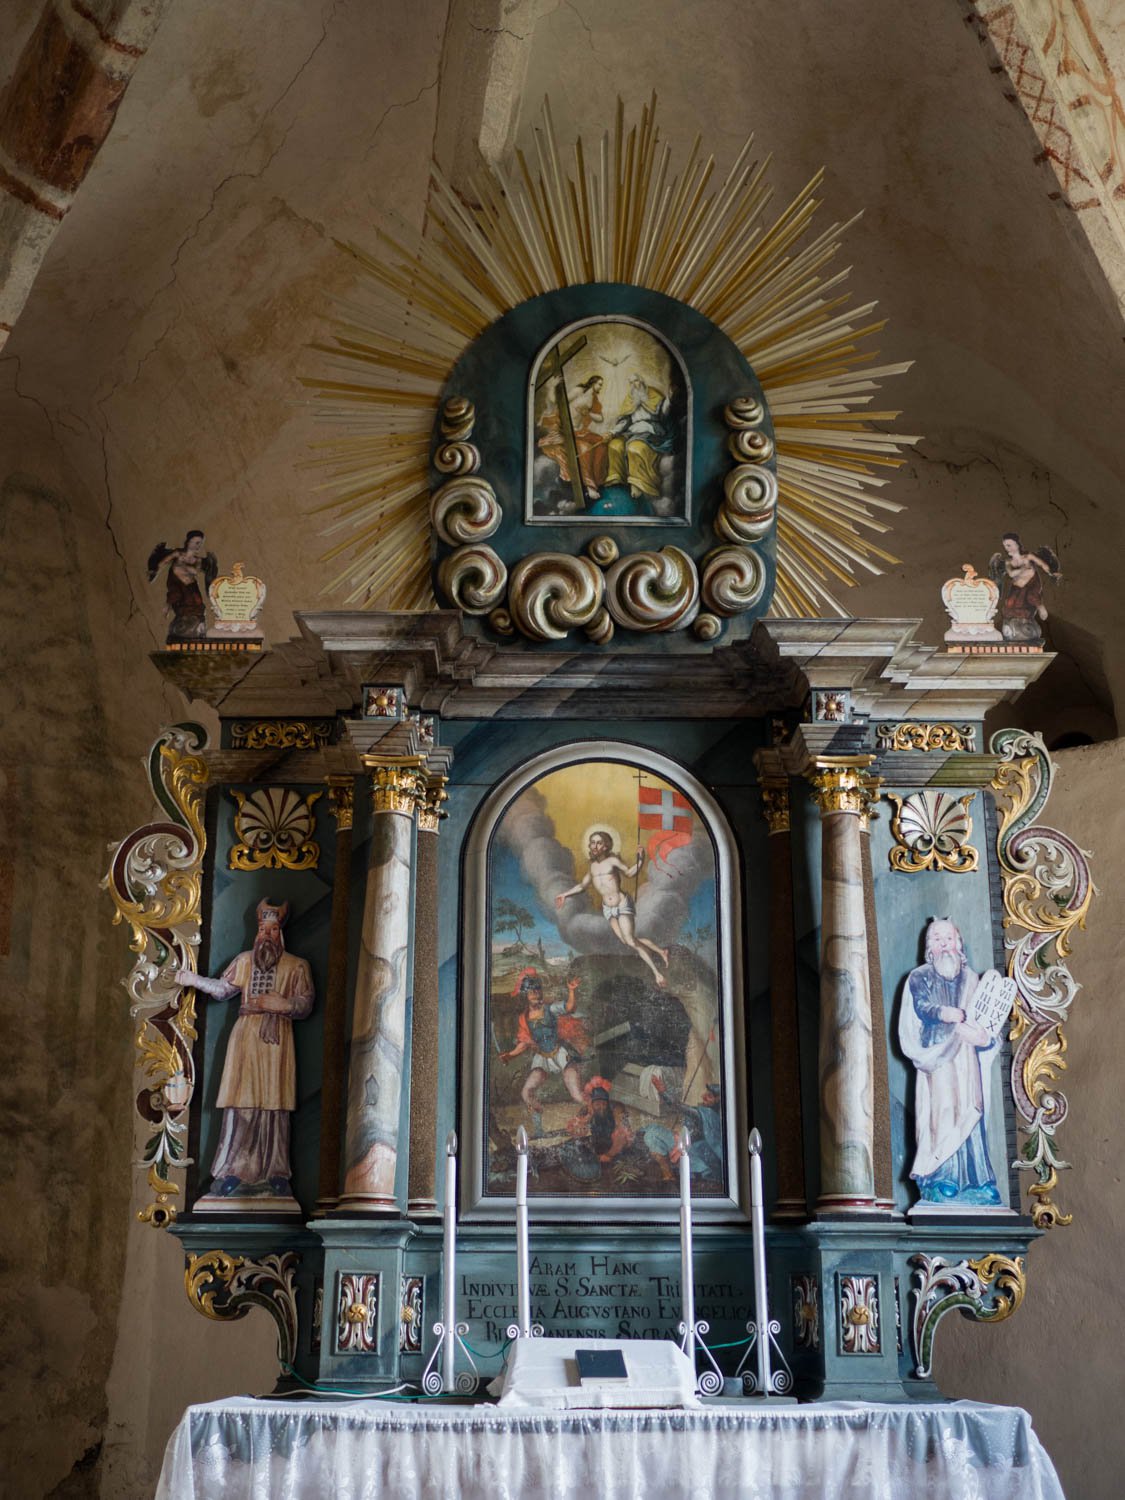 Oltár kostola v Rim. Bani